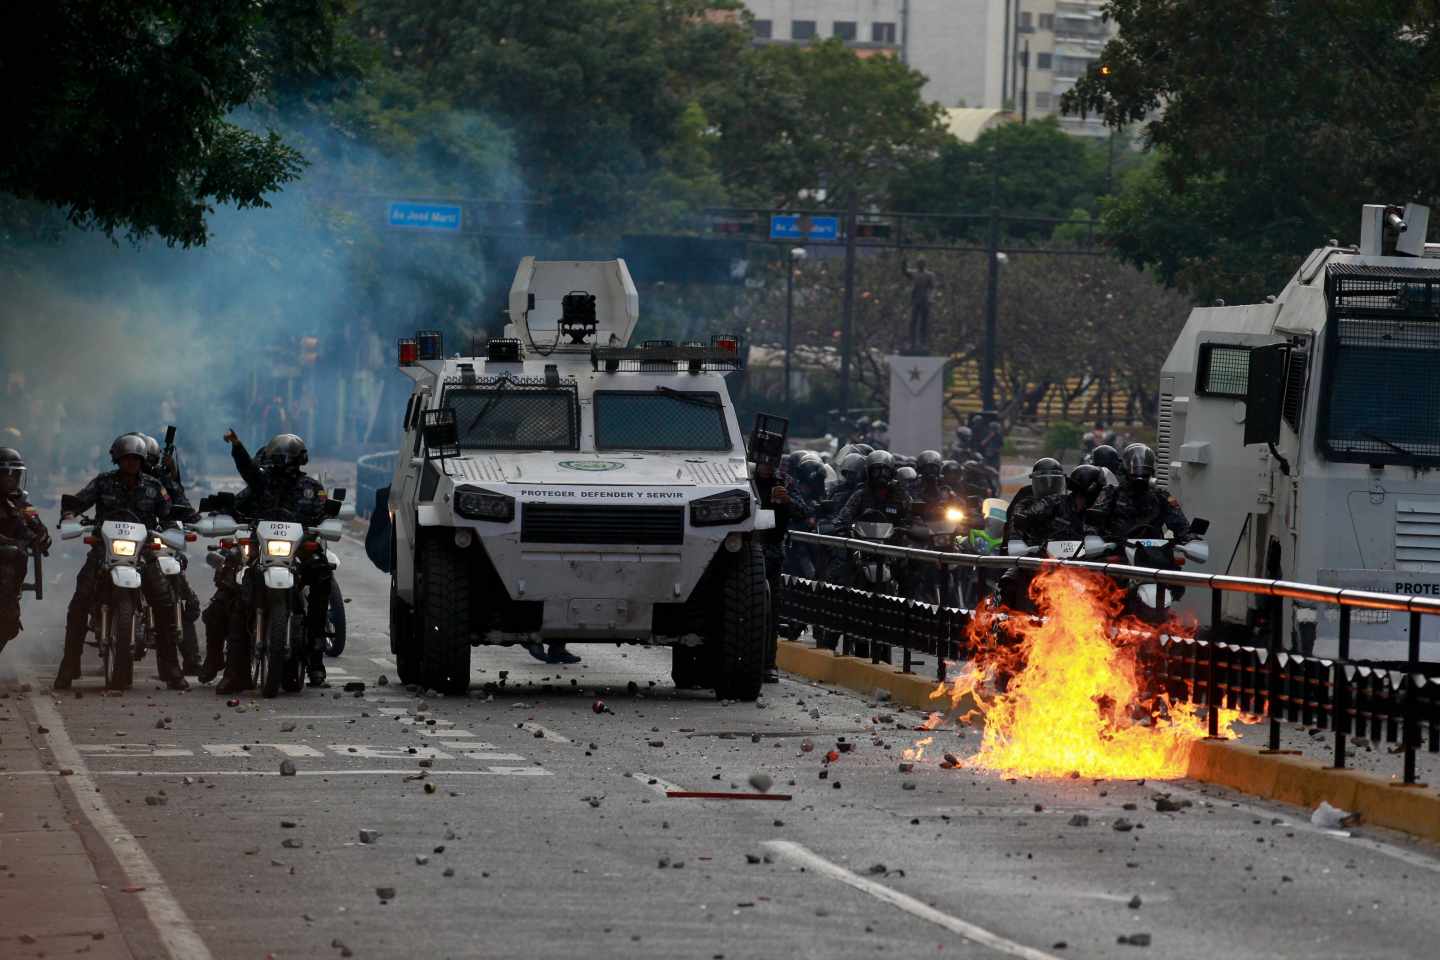 Más de 700 detenidos en las protestas en Venezuela